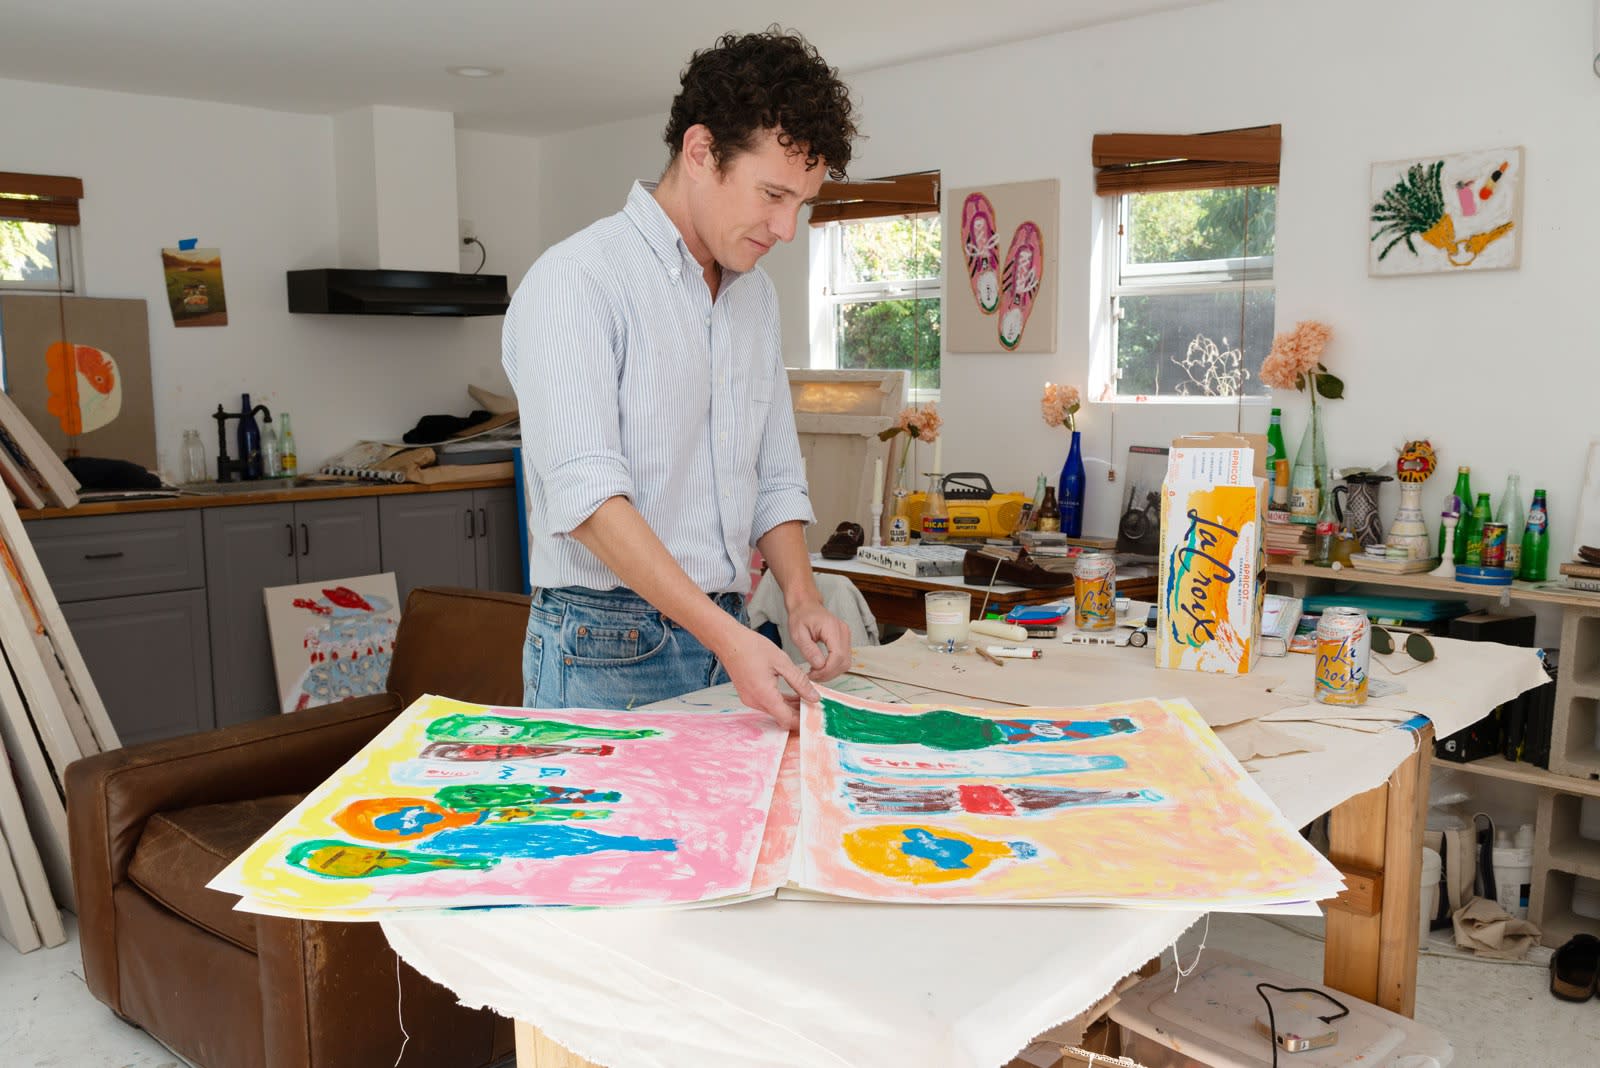 Michael McGregor showing works on paper in his studio